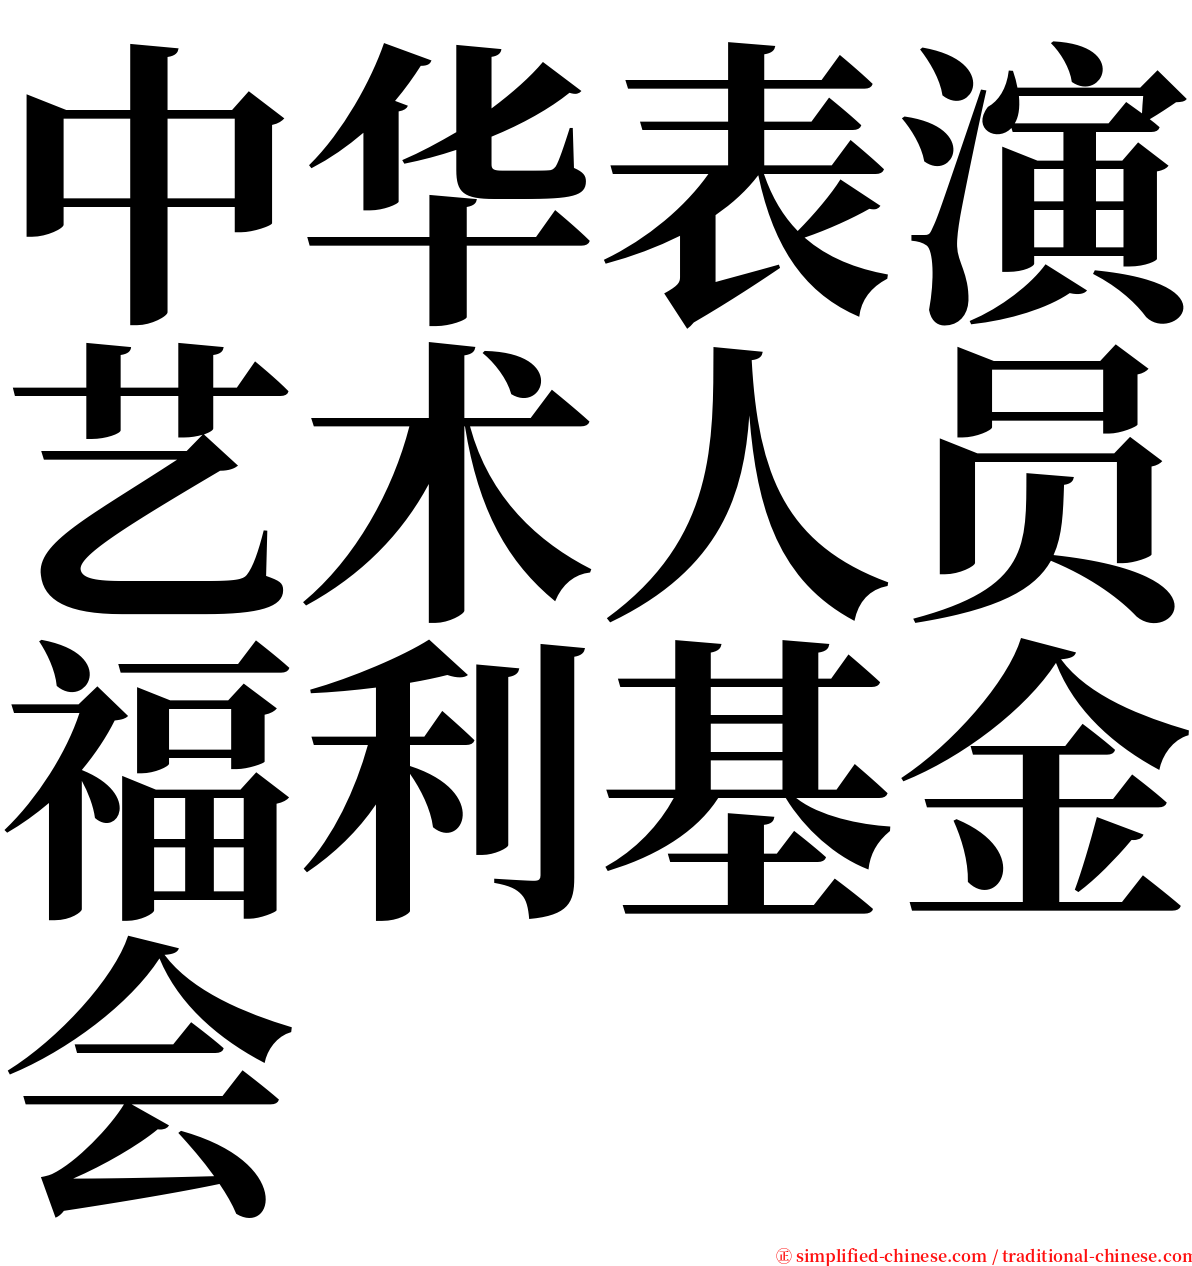 中华表演艺术人员福利基金会 serif font